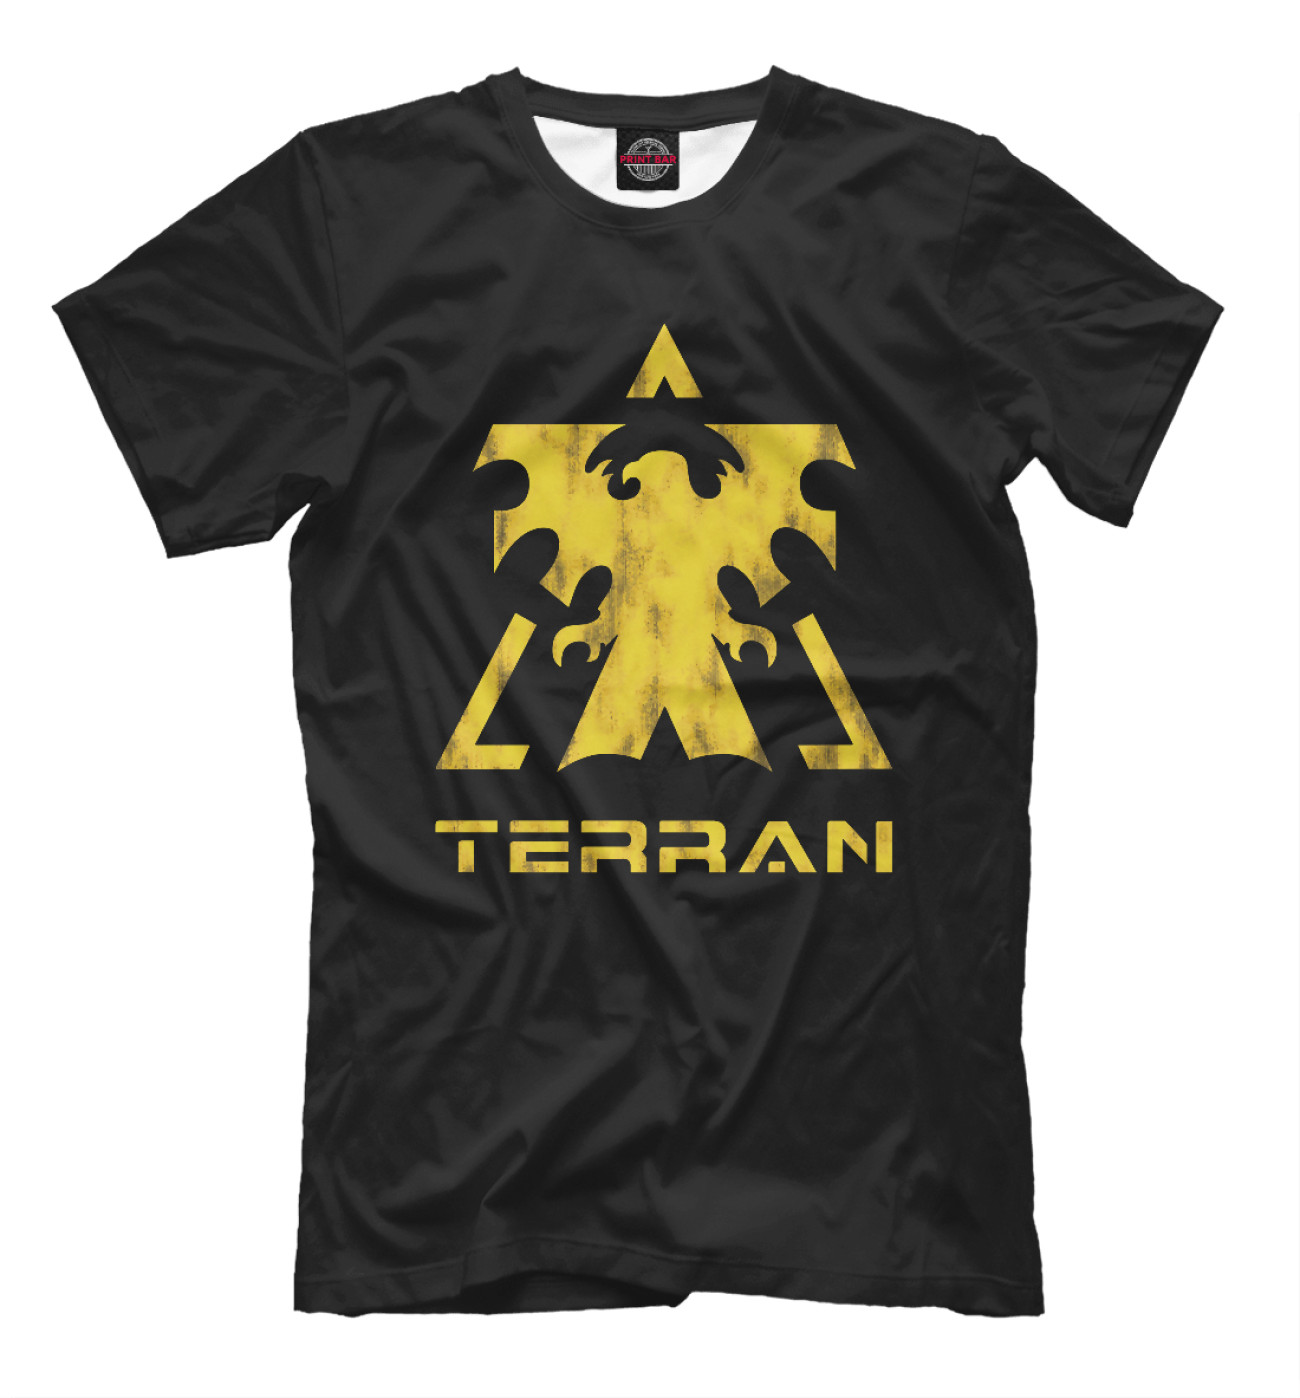 Мужская Футболка StarCraft II Terran, артикул: GMR-688585-fut-2